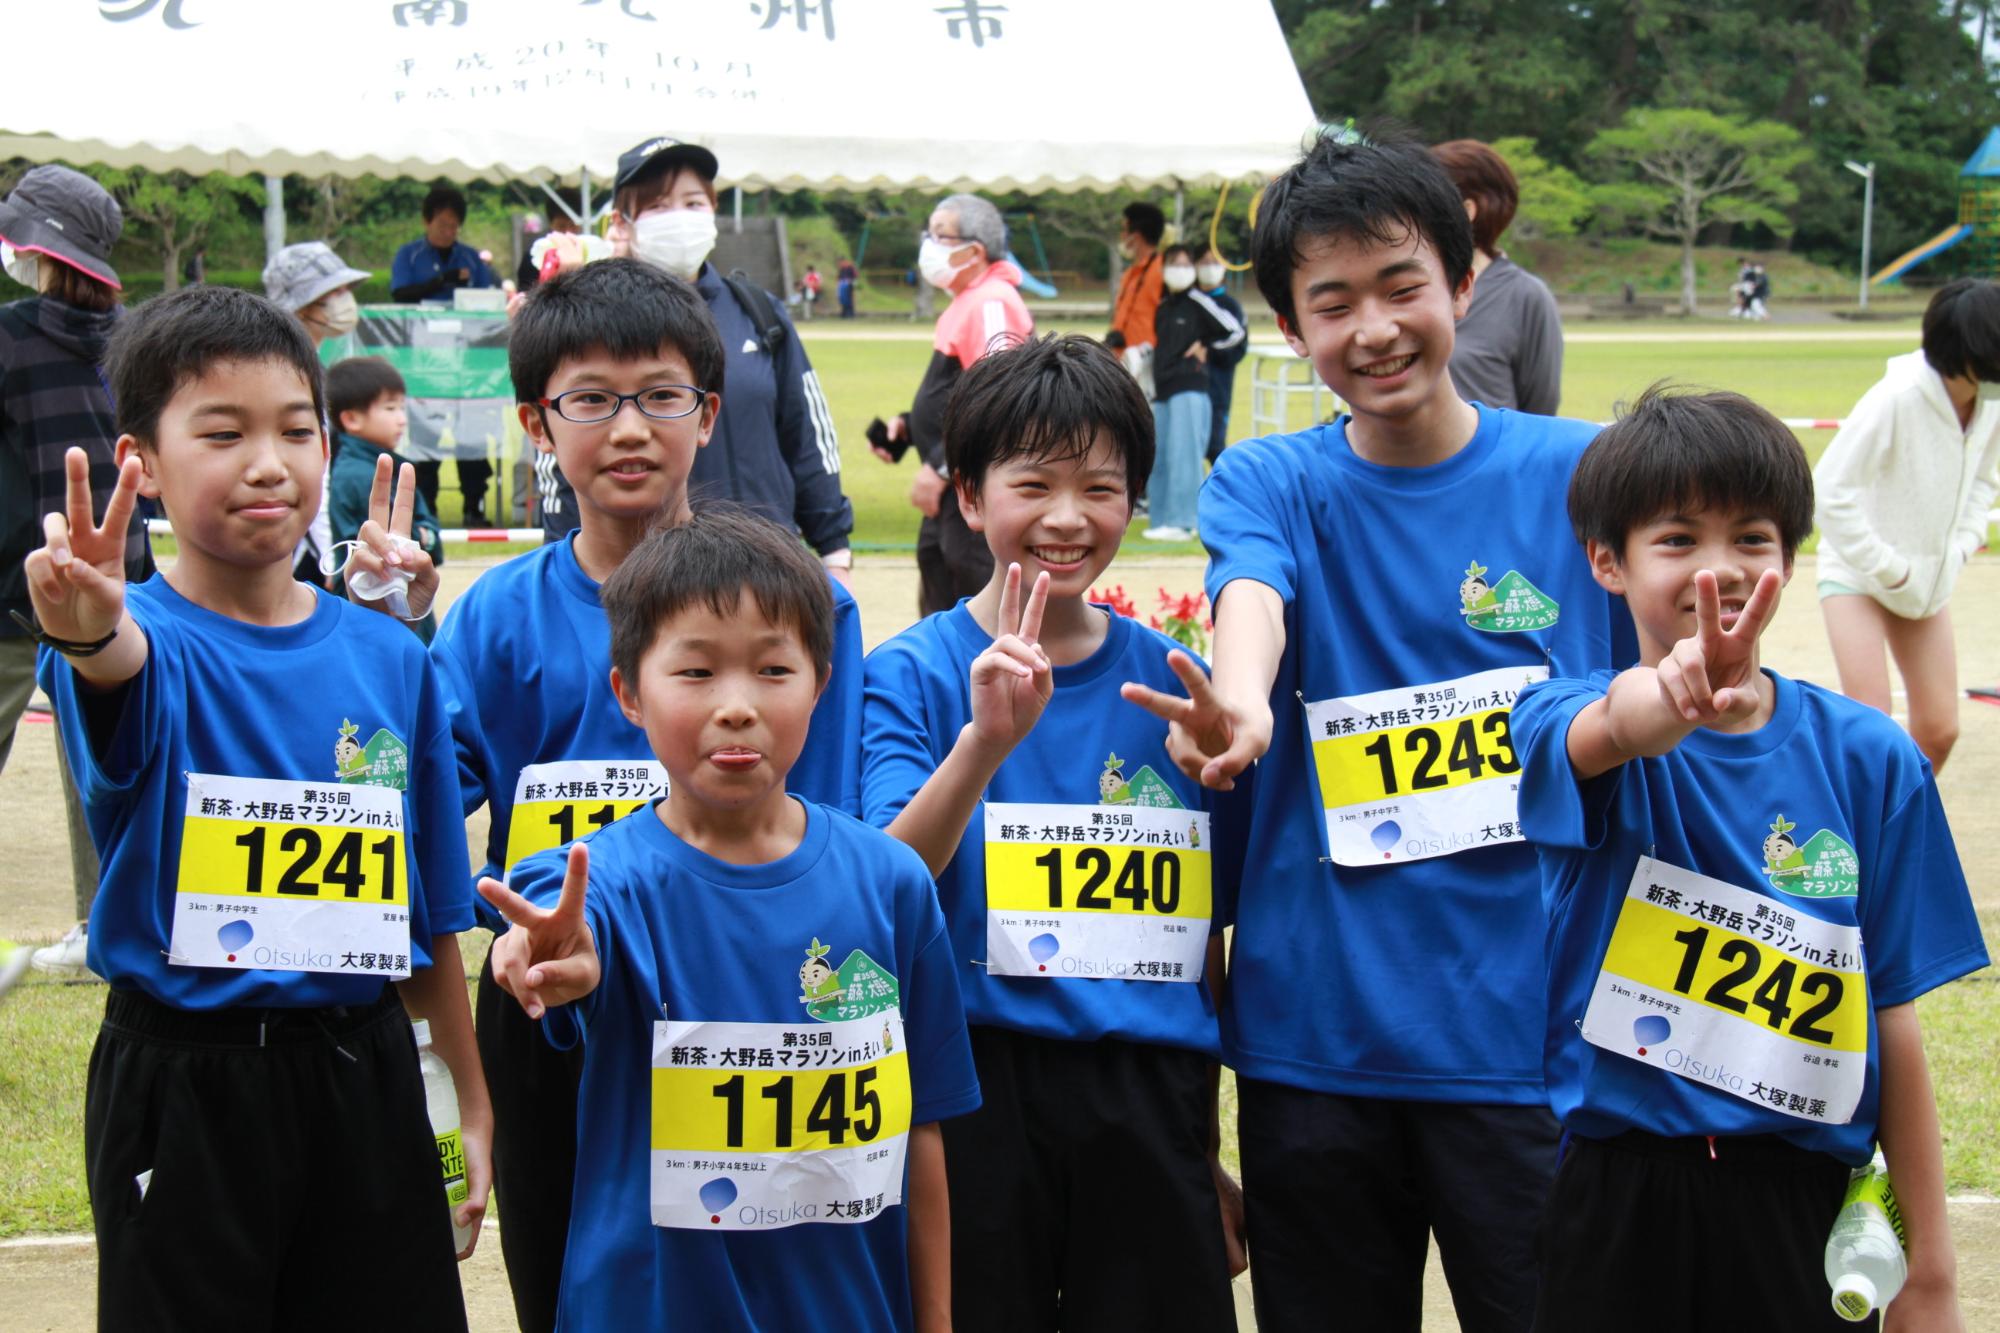 第35回新茶・大野岳マラソンinえいに参加した子どもの画像